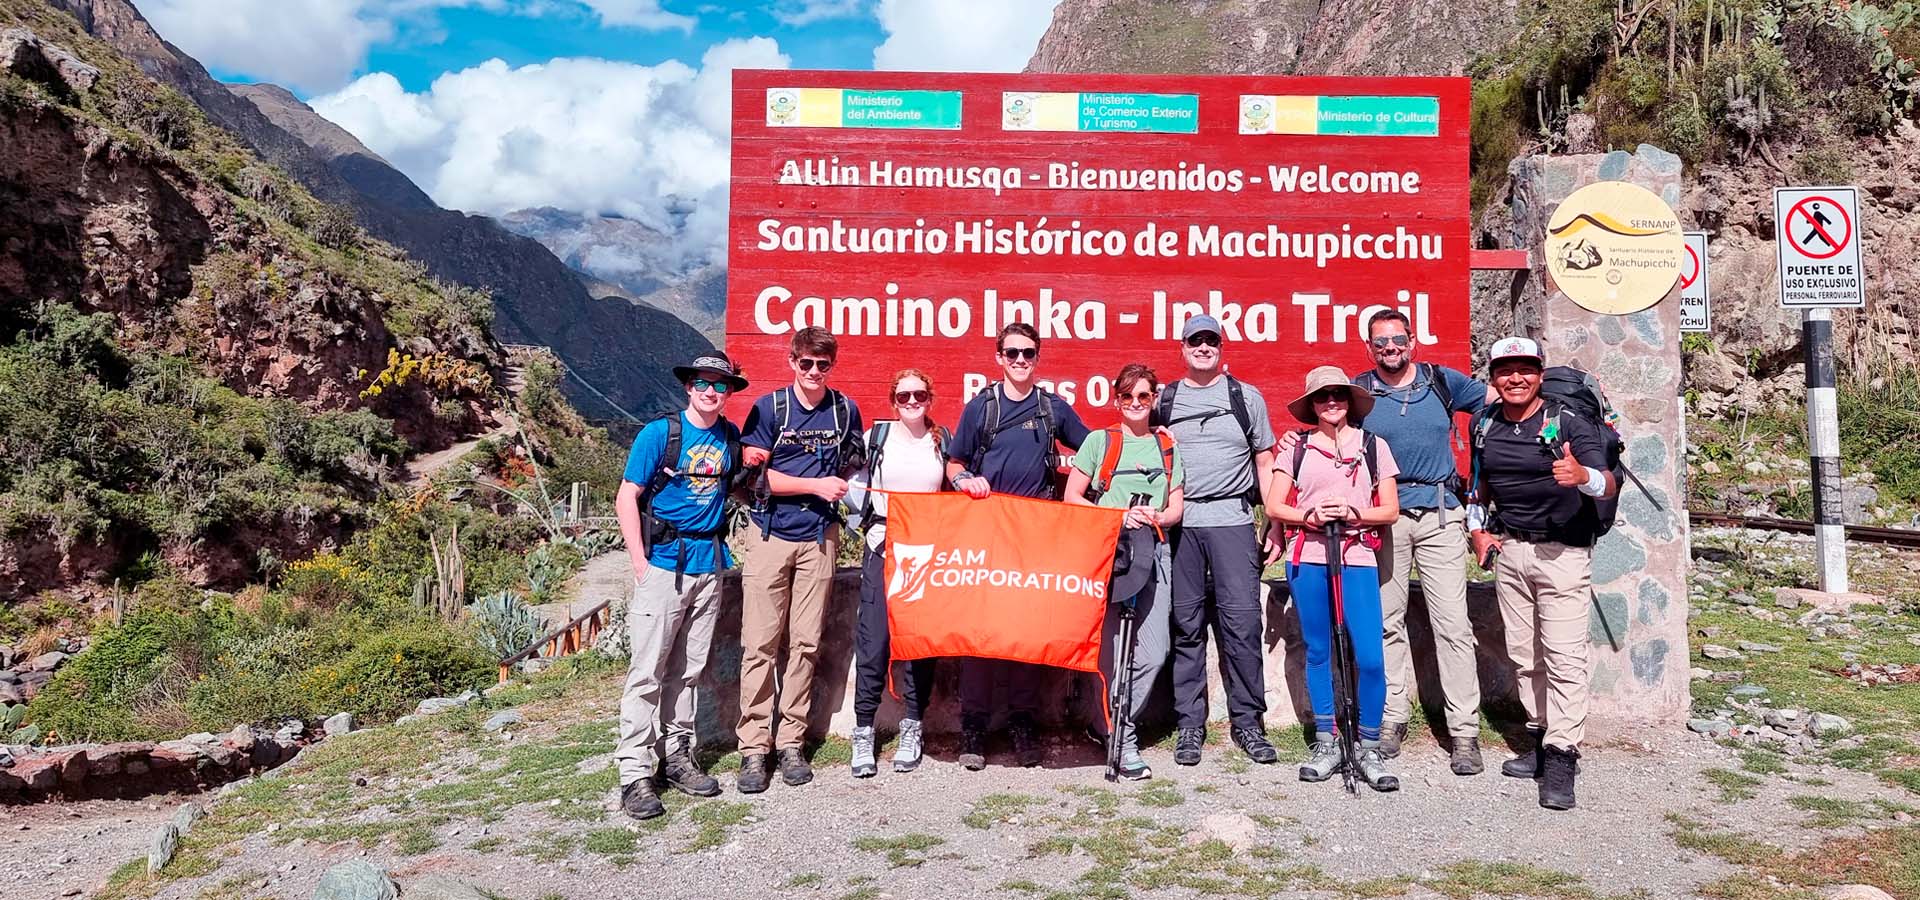 Inca trail to machu picchu - Sam Corporations